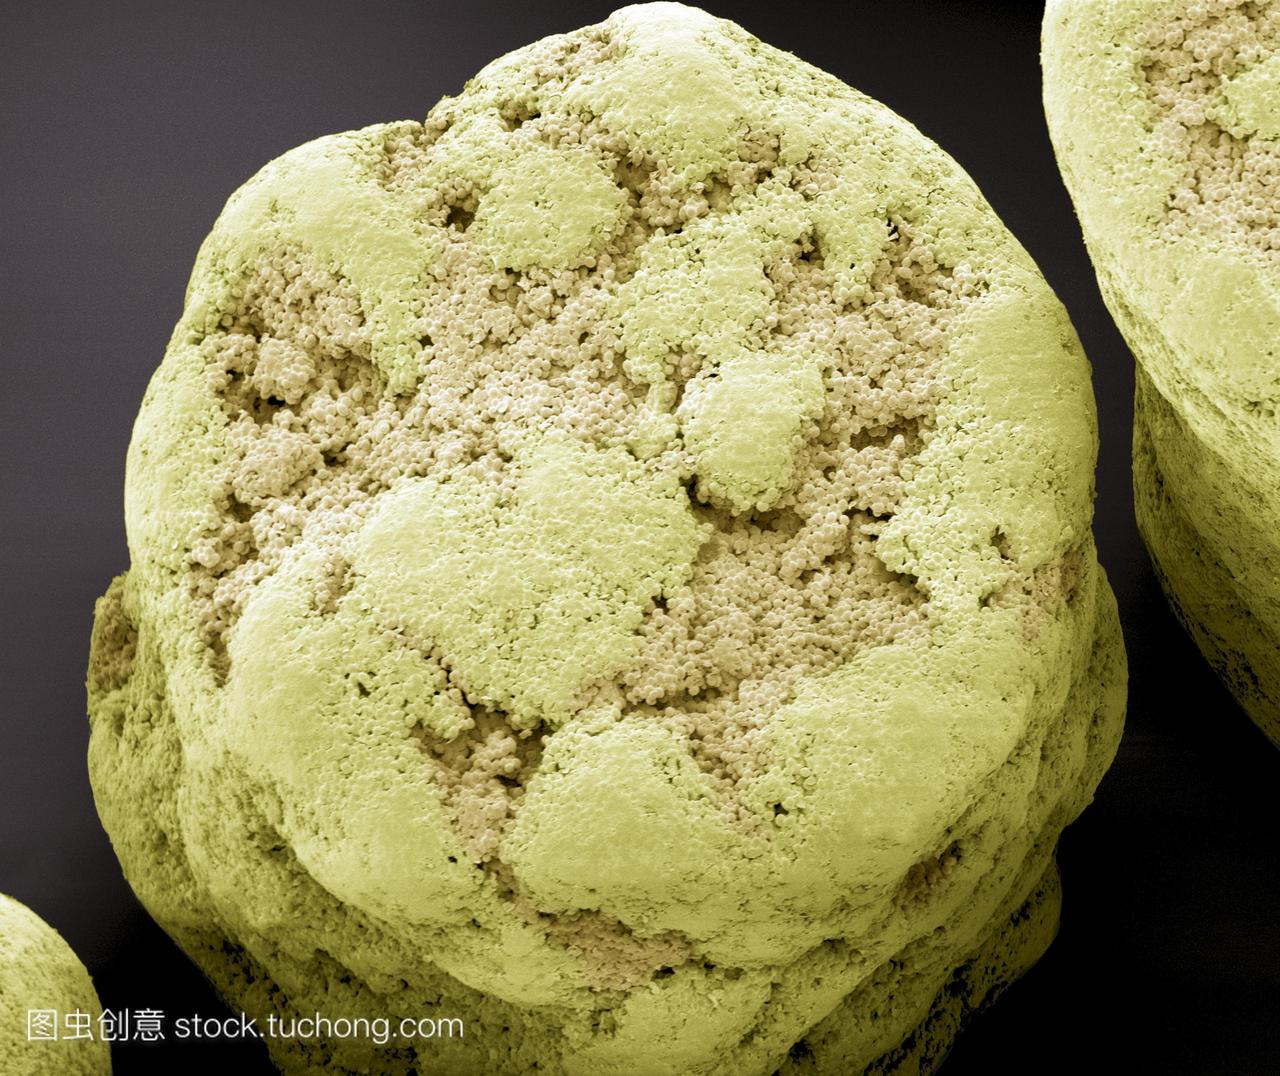 干商业酵母颗粒。面包酵母酵母的彩色扫描电子